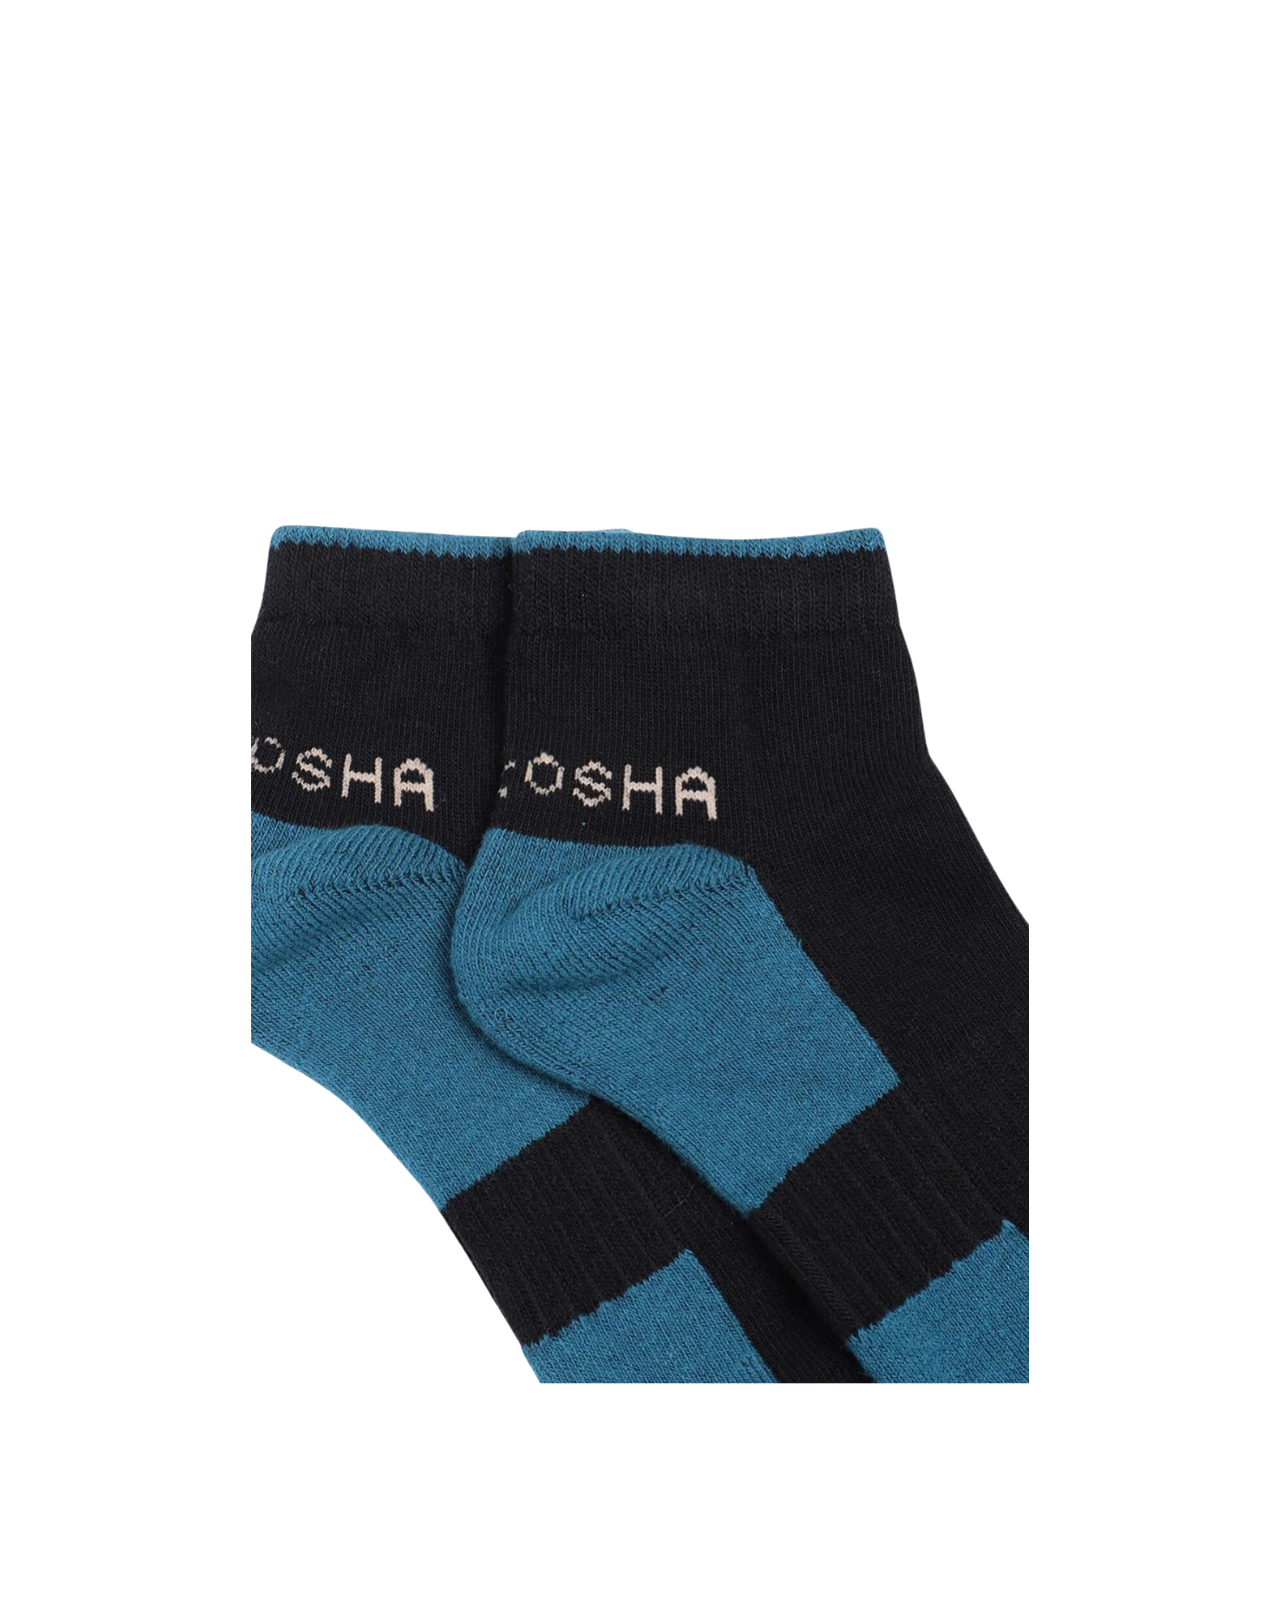 Ankle Length Cotton Sports Socks For Men